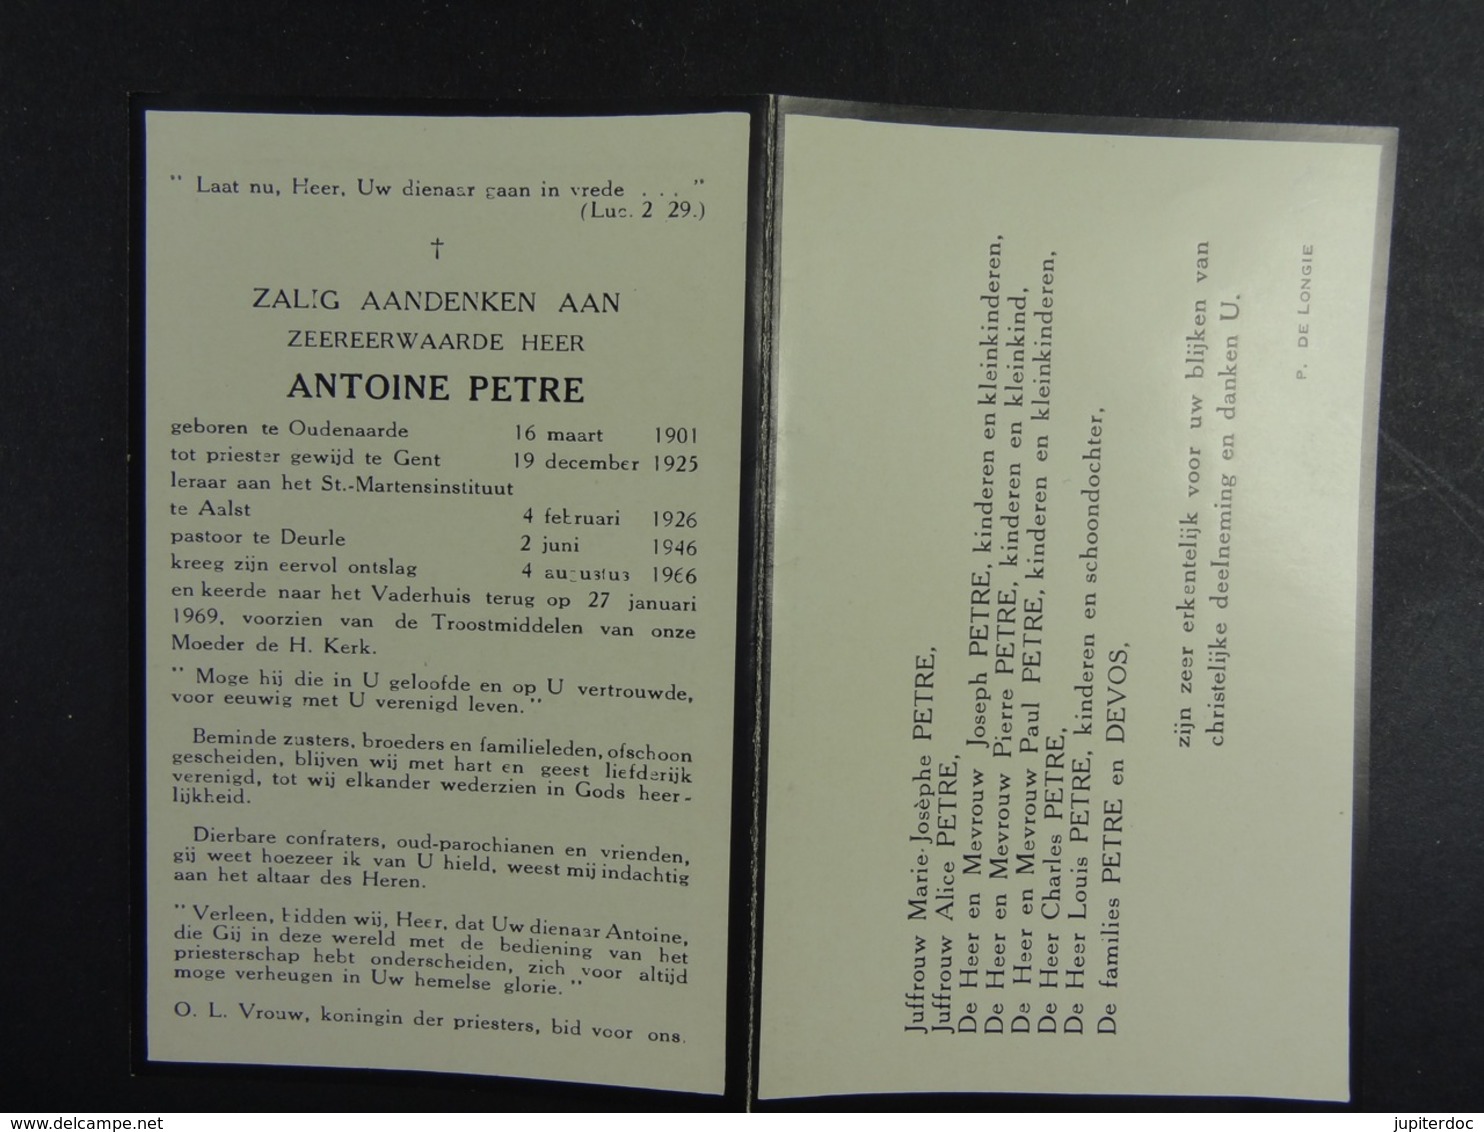 Zeer Eerwarden Heer Antoine Petre Oudenaarde 1901 ? 1969 (Gent, Aalst, Deurle) /1/ - Images Religieuses